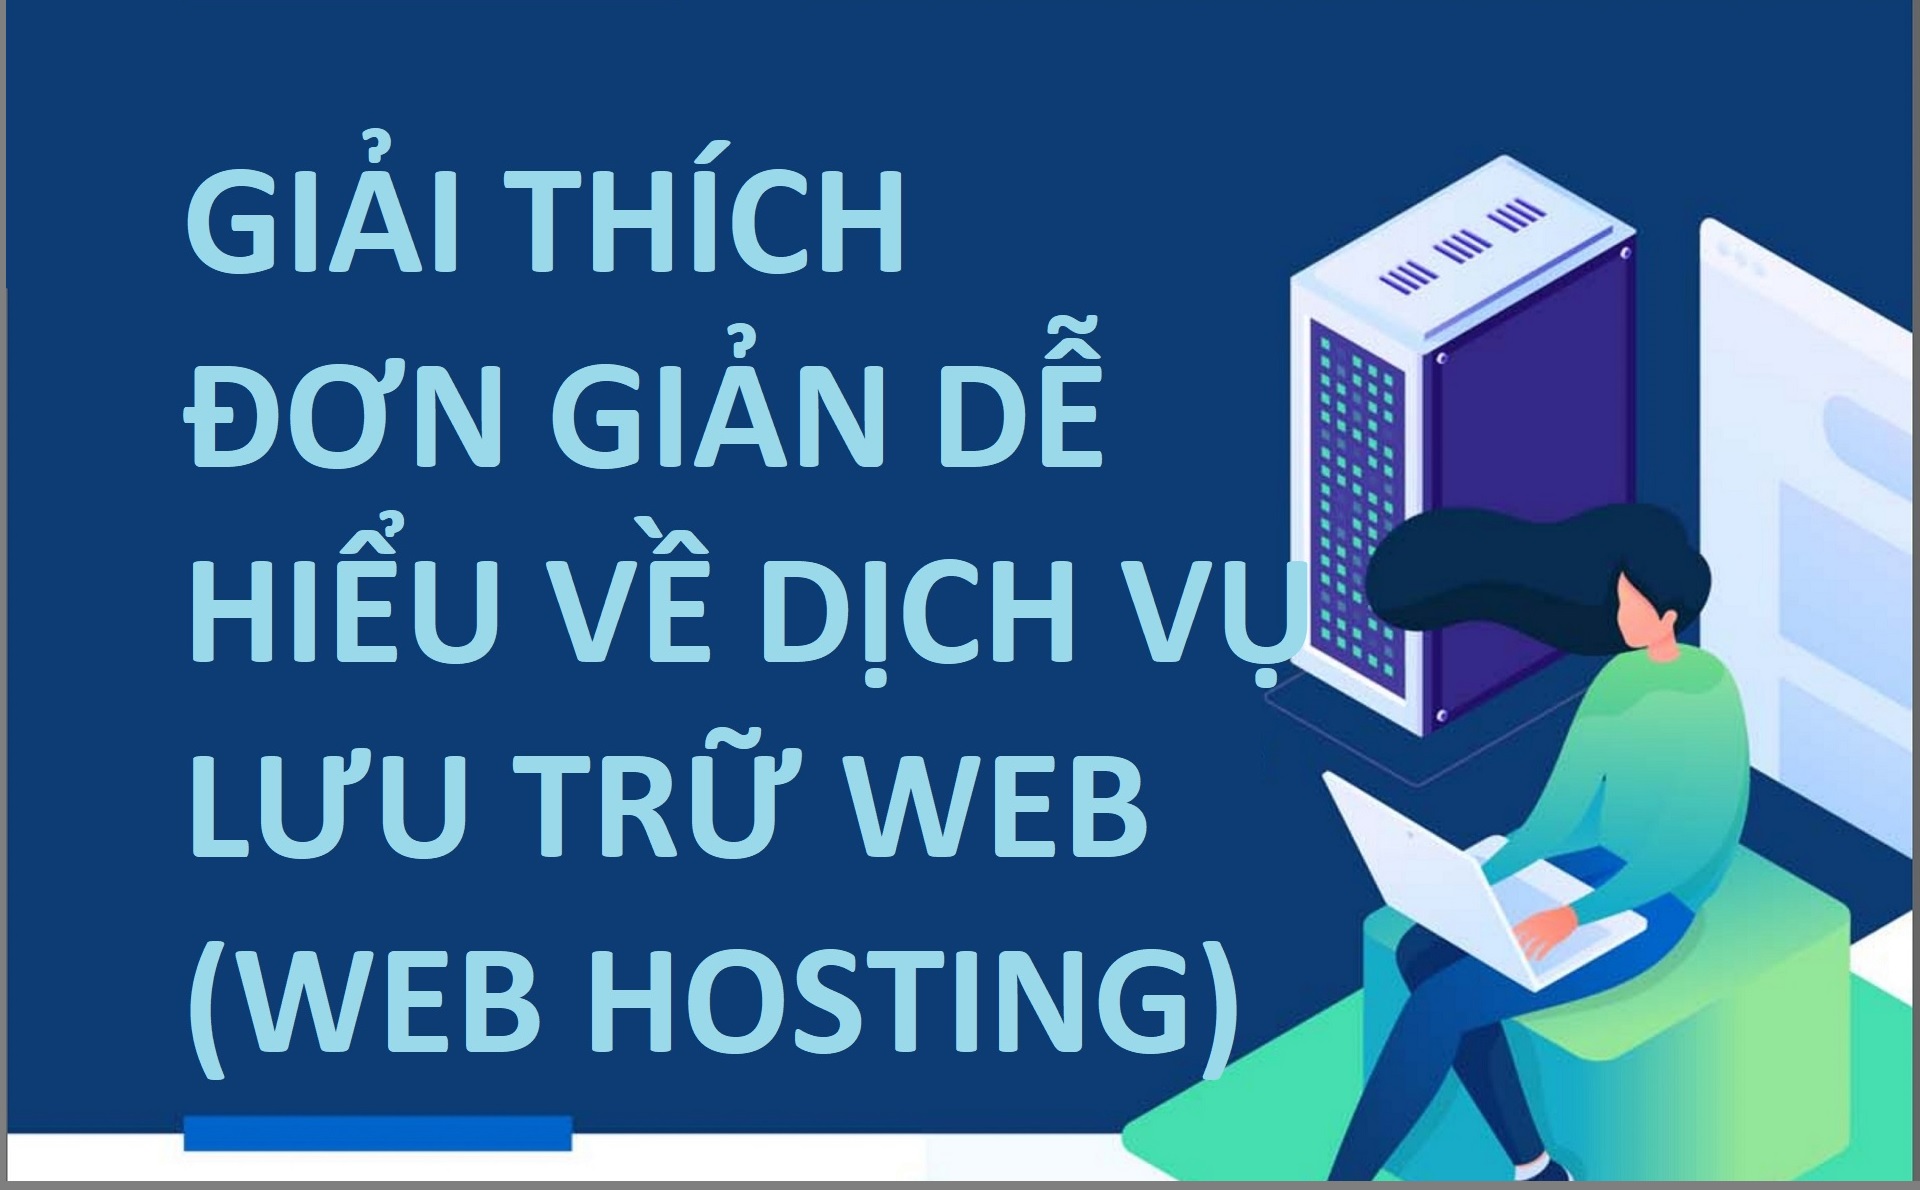 Infographic: Web Hosting - Dịch vụ lưu trữ web là gì